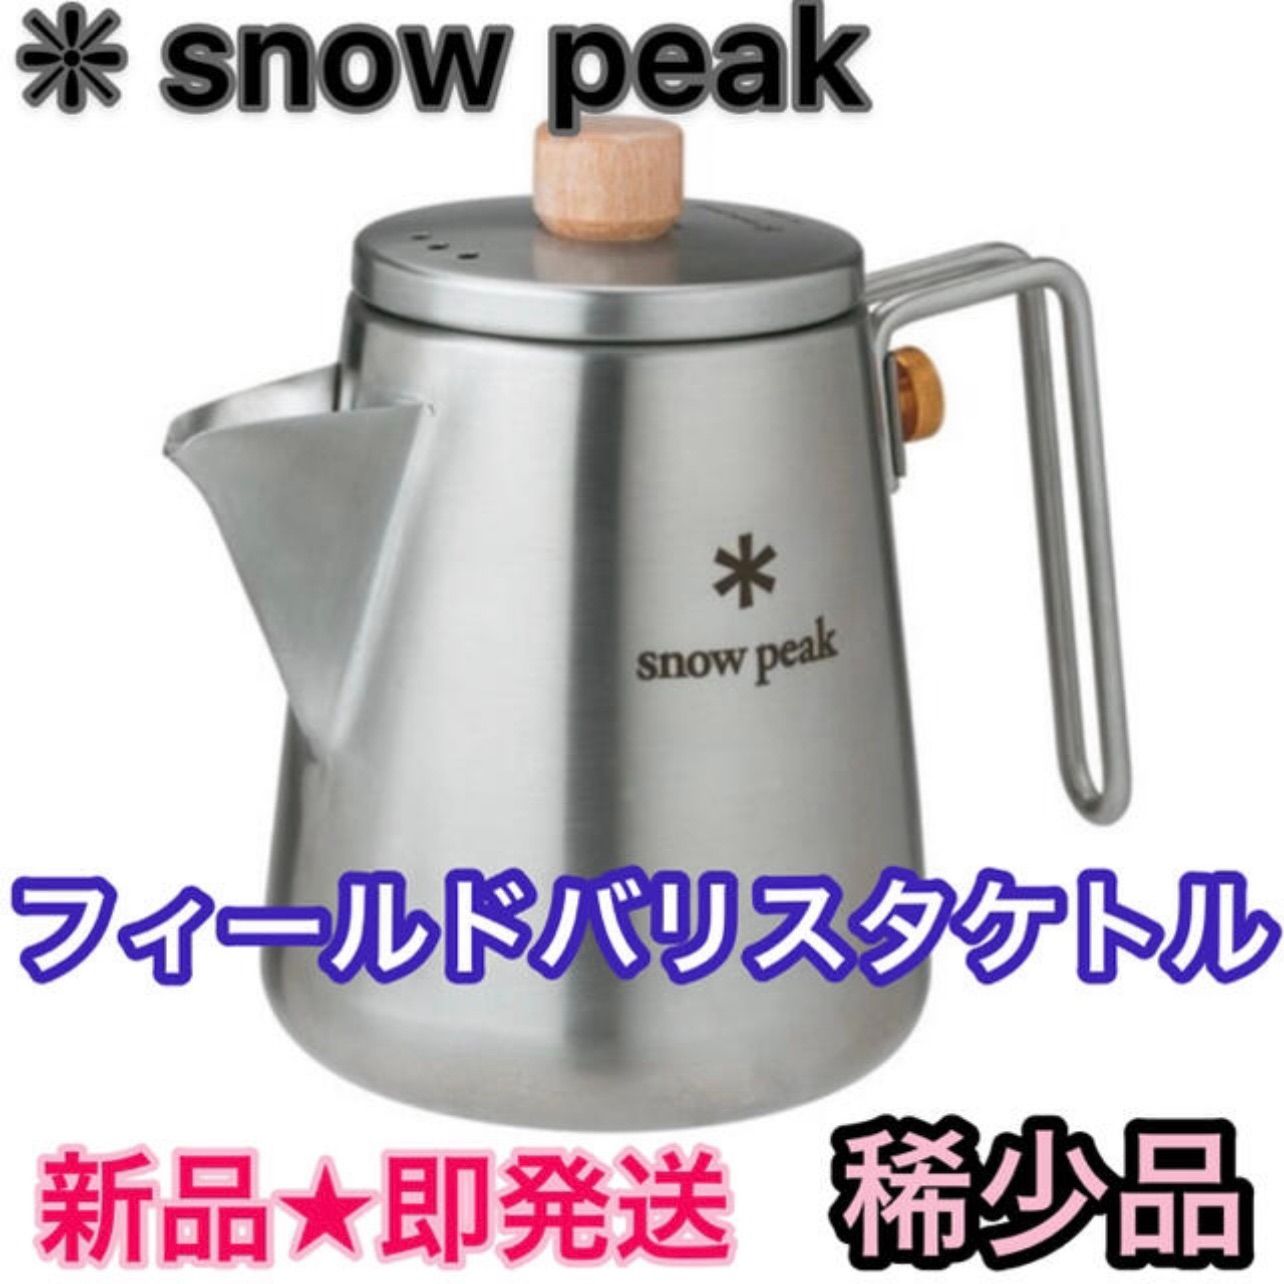 半額購入新品 スノーピーク snow peak フィールドバリスタ ケトル CS-115 調理器具